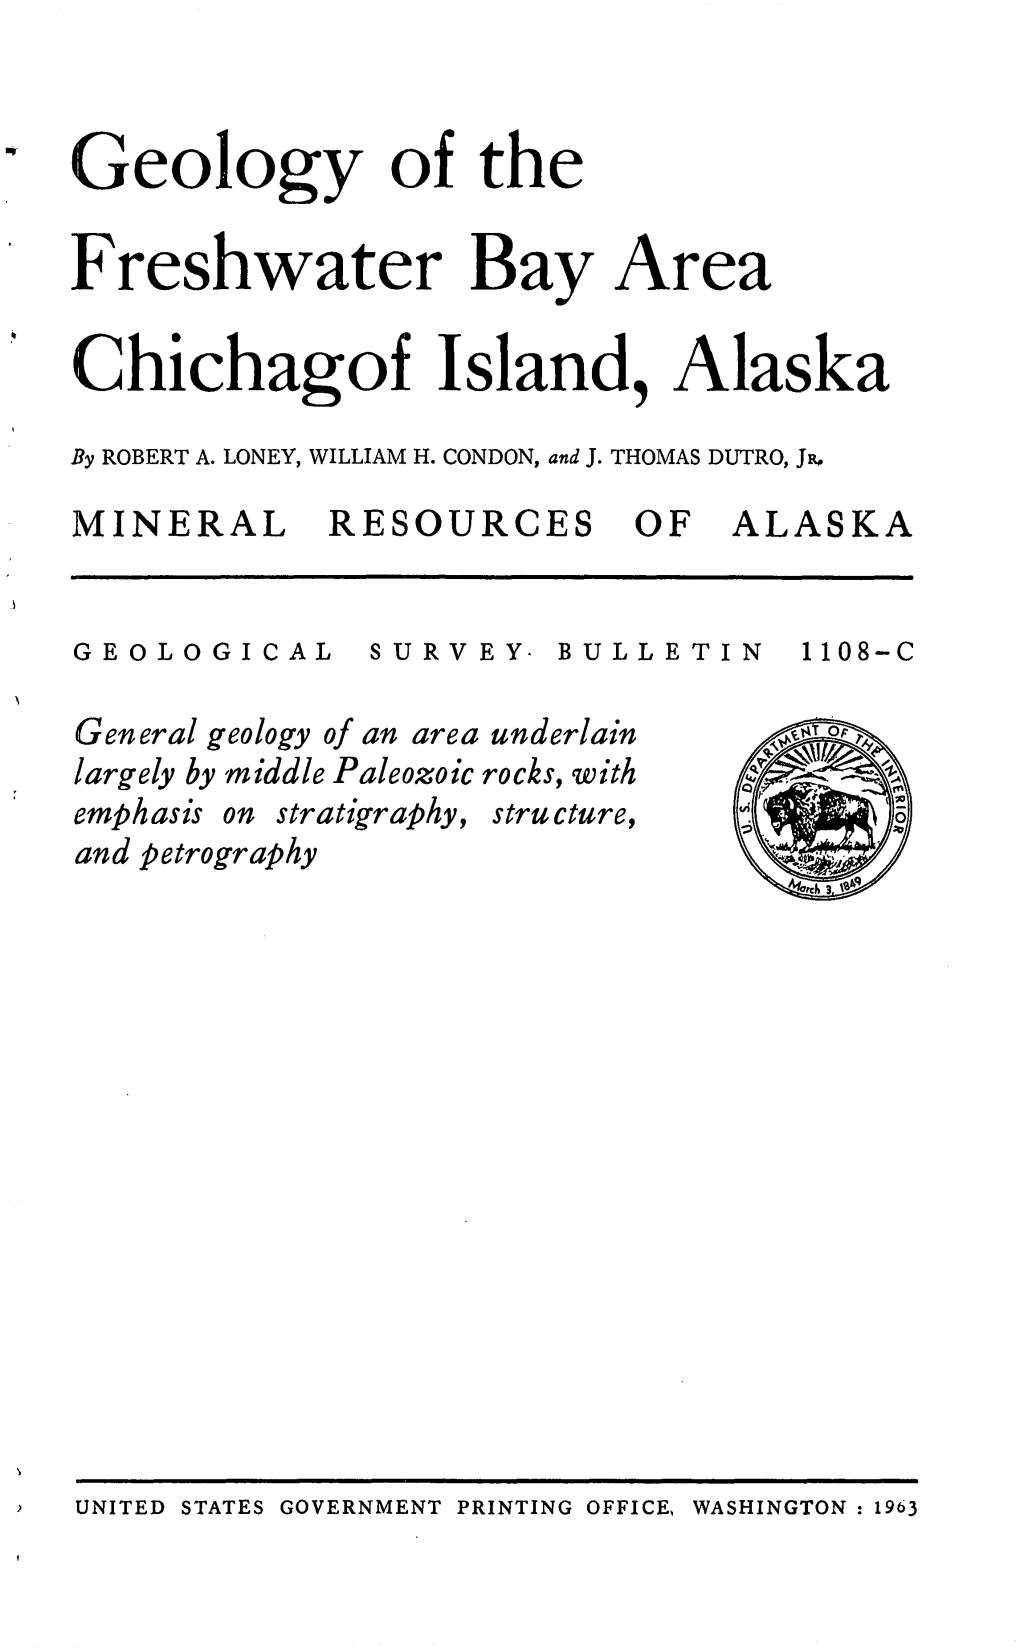 Geology of the Freshwater Bay Area Chichagof Island, Alaska